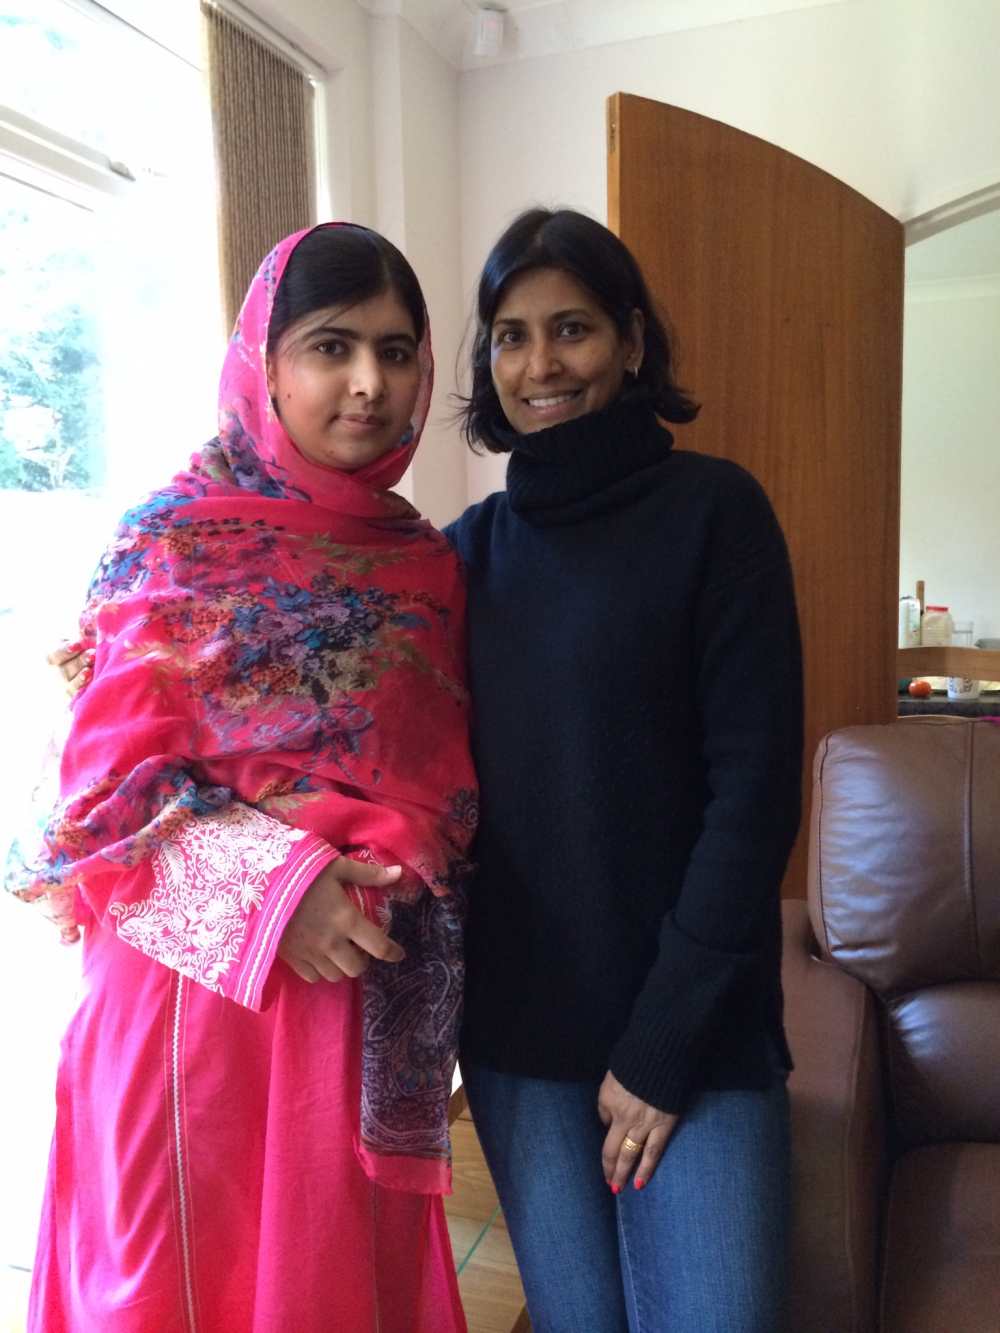 Ruby-Hammer-and-Malala-Yousafzai